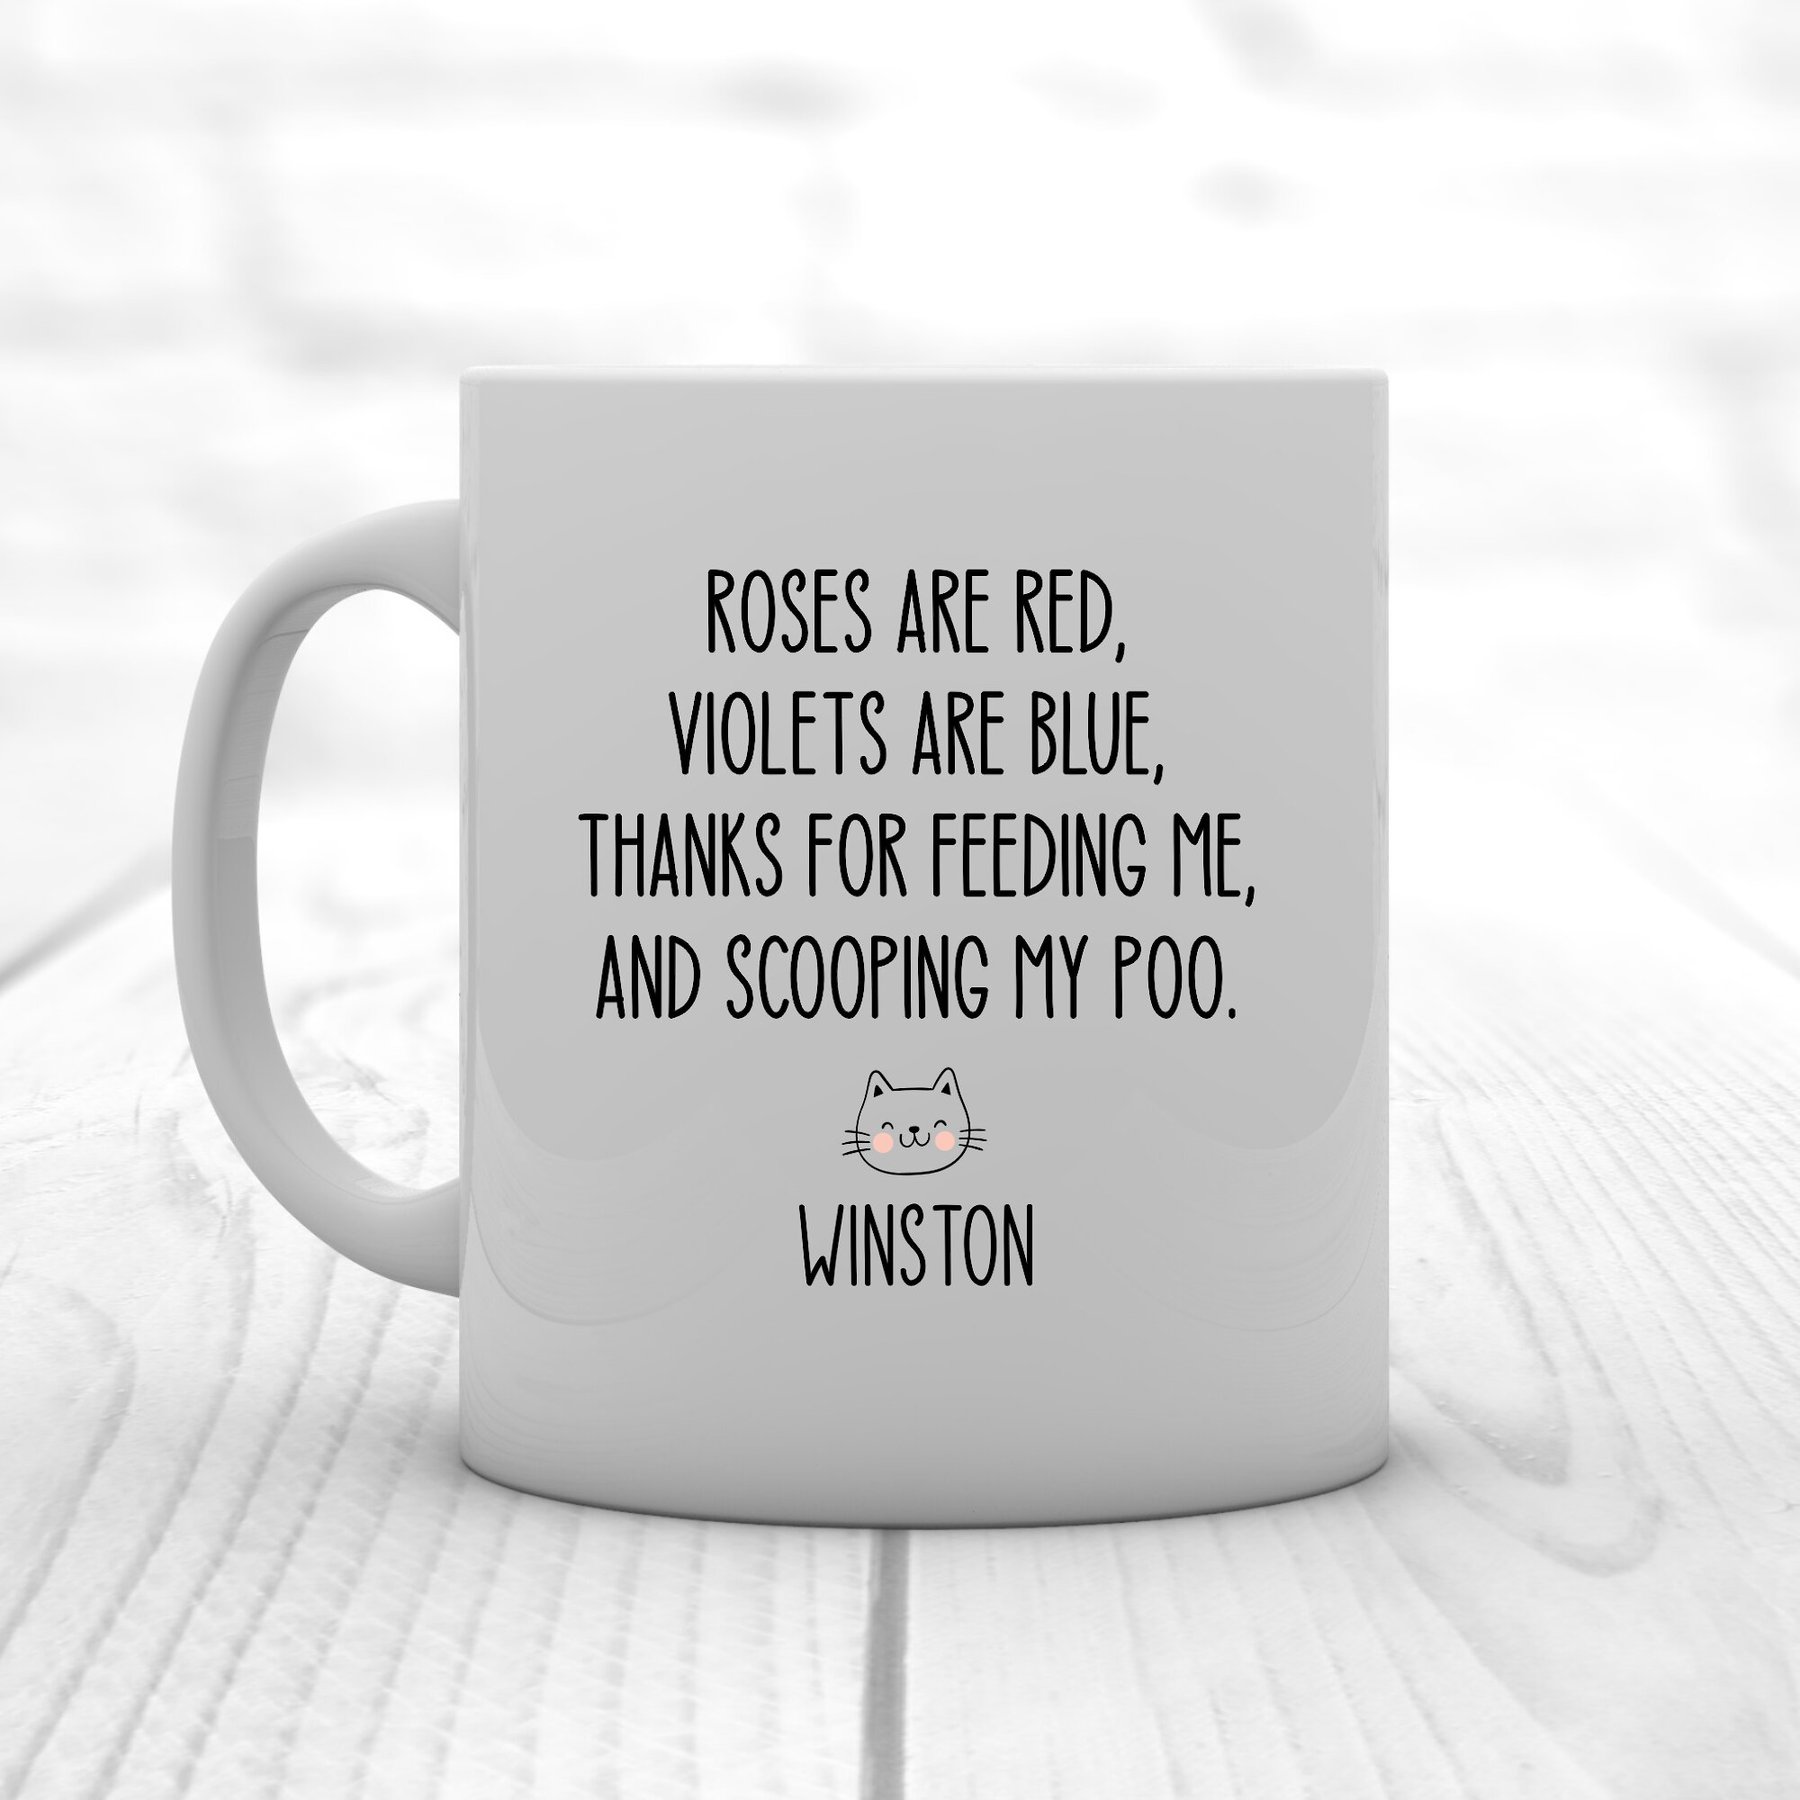 15oz Valentine's Day 'be My Valentine' Mug - Threshold™ : Target